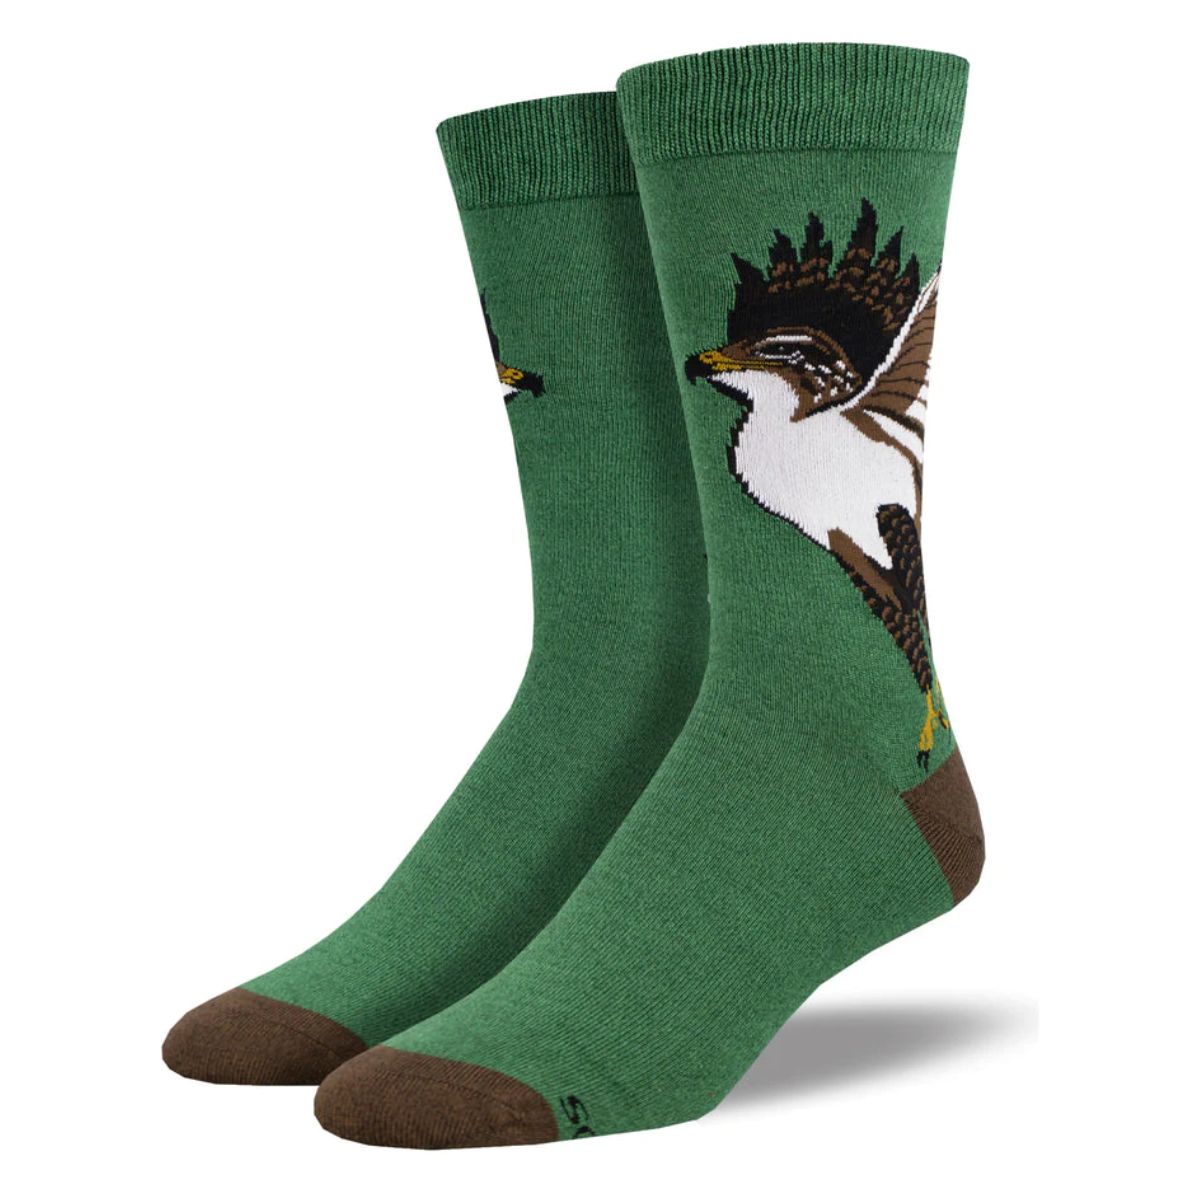 hawk socks a pair of green crew socks with hawk print